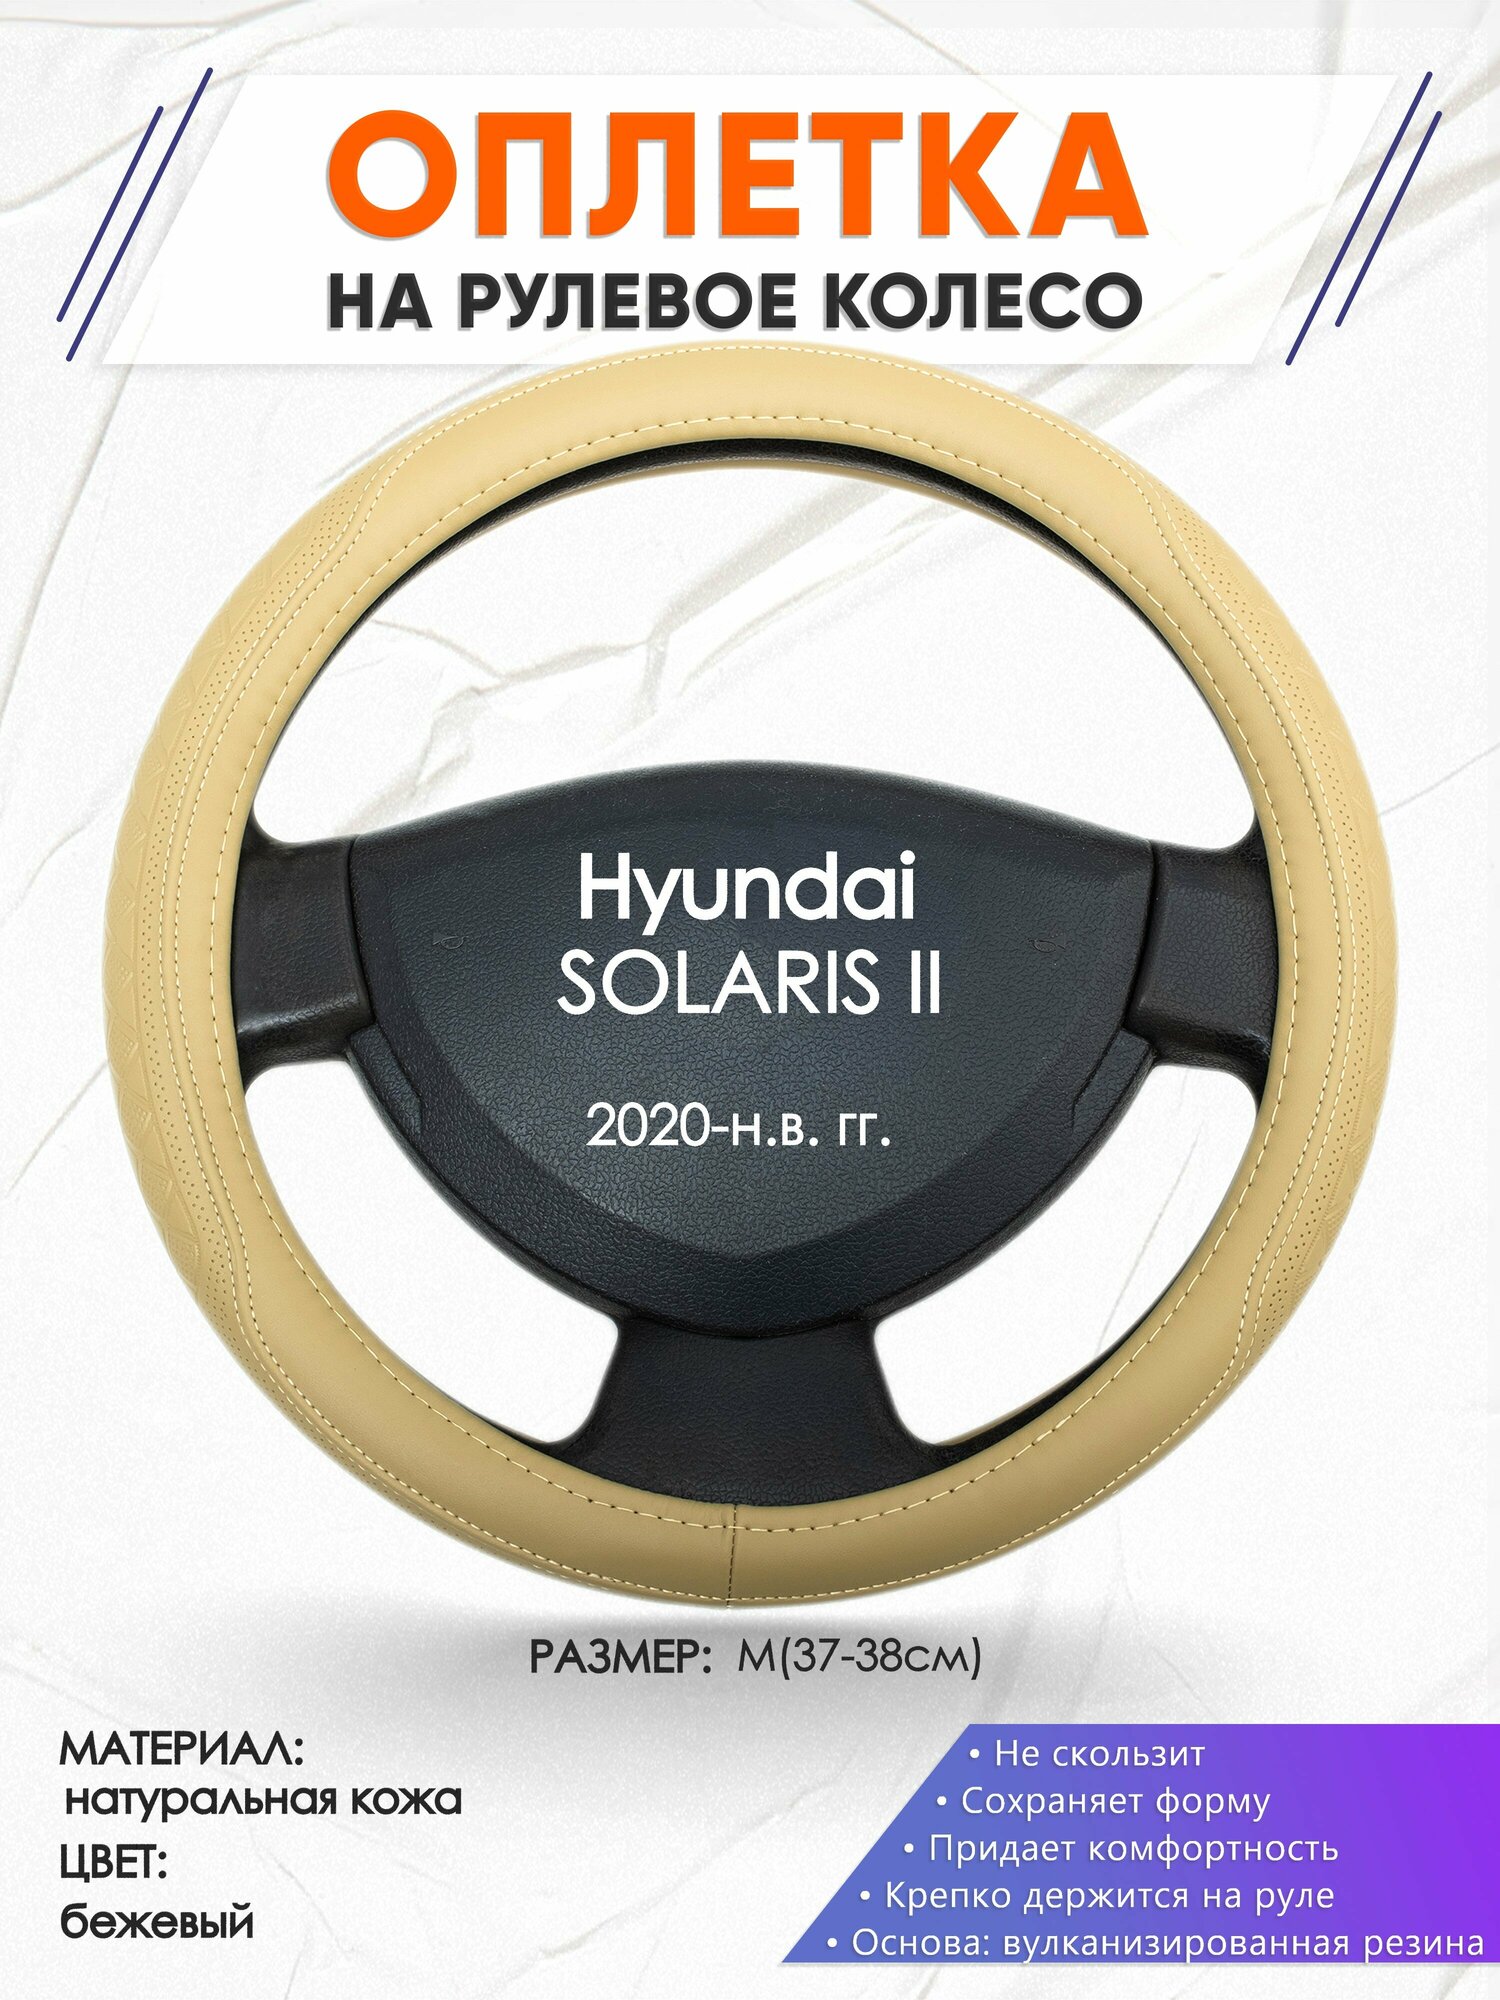 Оплетка наруль для Hyundai SOLARIS 2(Хендай Солярис 2) 2020-н. в. годов выпуска, размер M(37-38см), Натуральная кожа 91